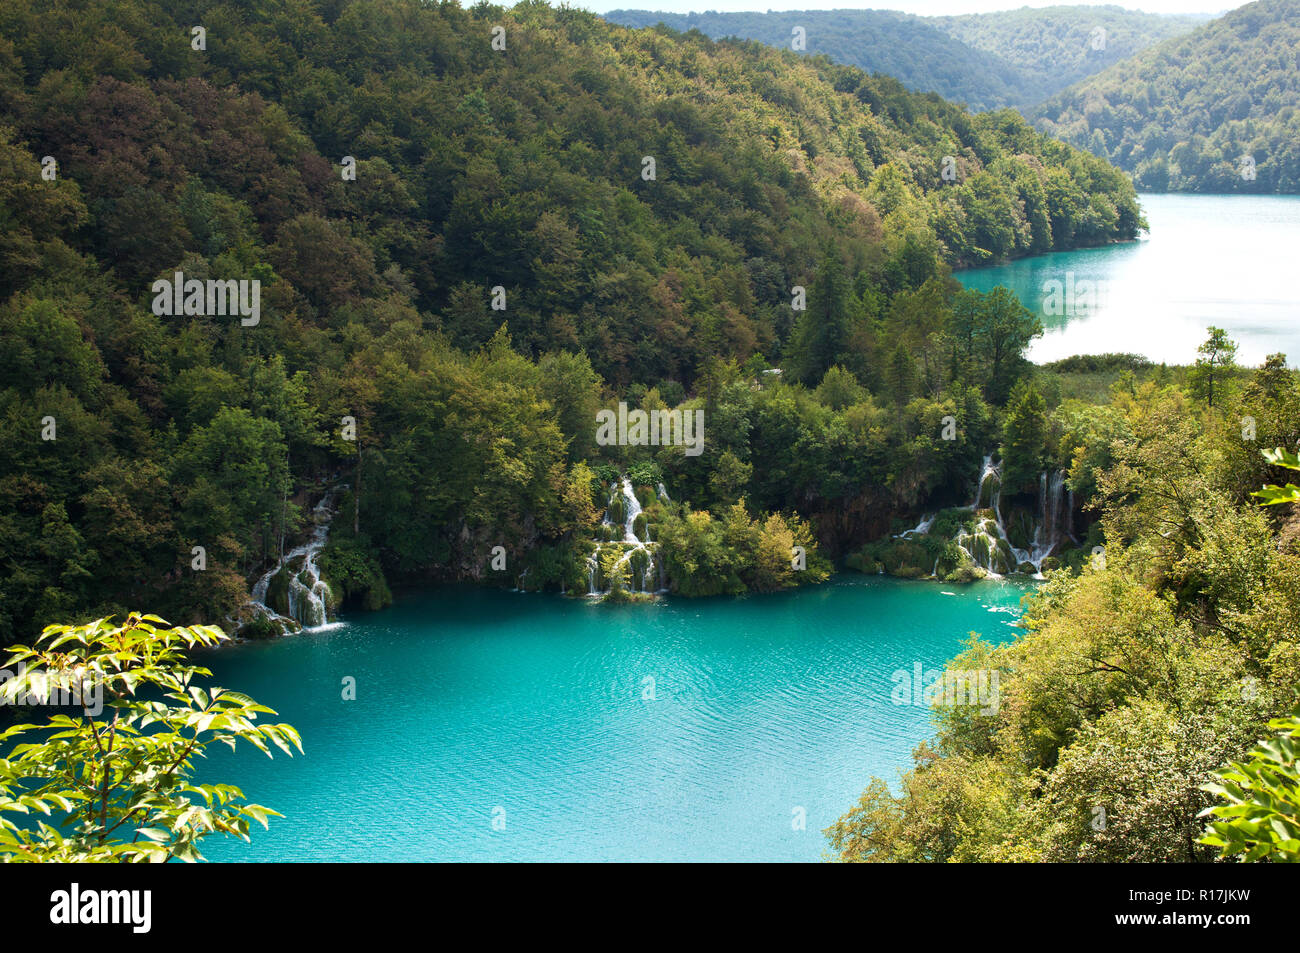 Cascades de Milanovac cascade entre les arbres et l'herbe verte en été. Vue de dessus. Le parc national des lacs de Plitvice, Croatie Banque D'Images